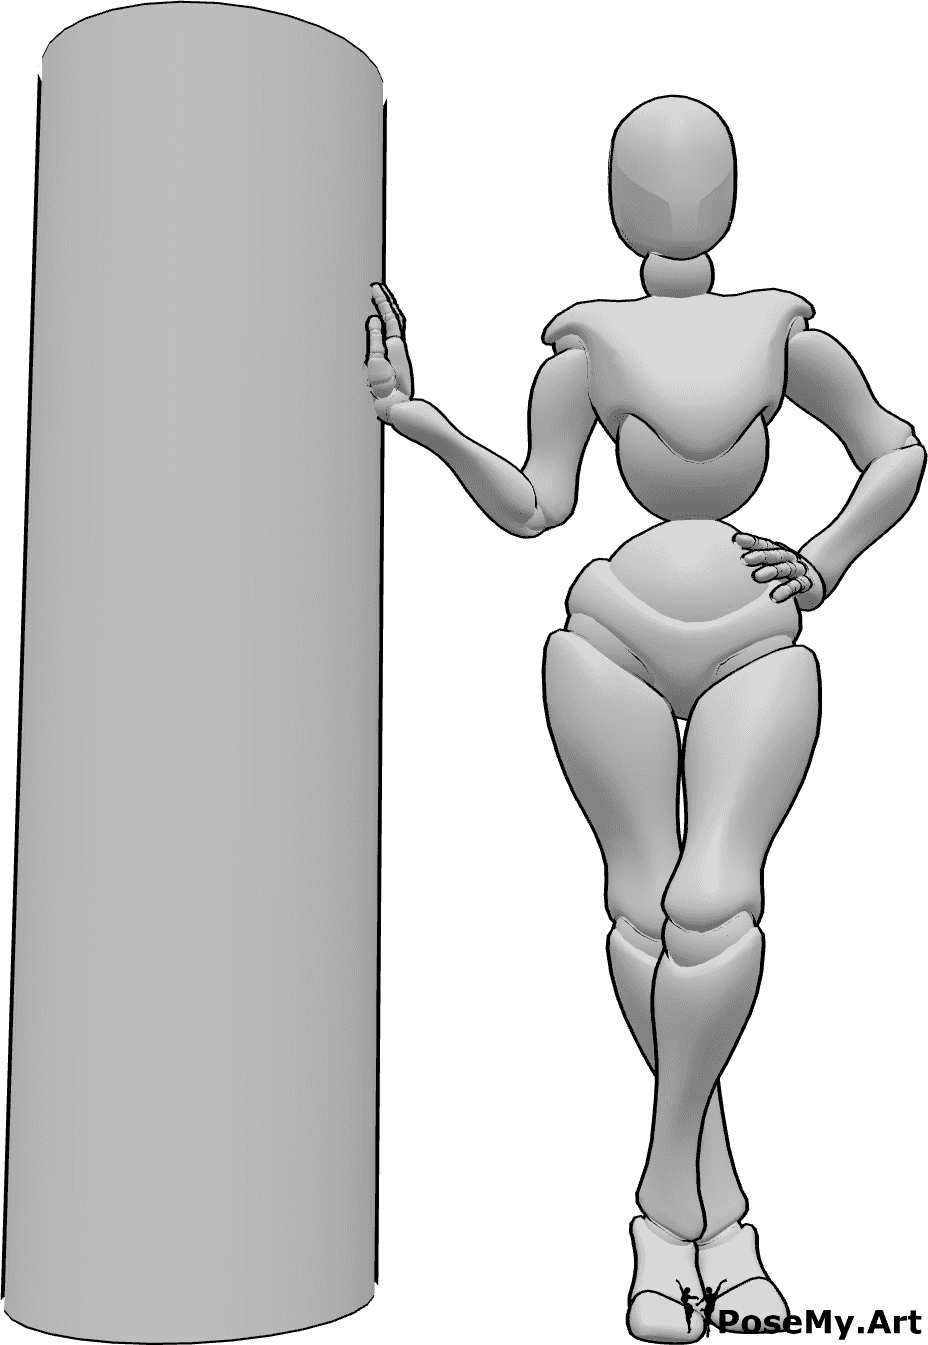 Referencia de poses- Foto inclinada pose de la mano - Mujer de pie y apoyada en un pilar, posando para una foto, sosteniendo sus manos con elegancia.